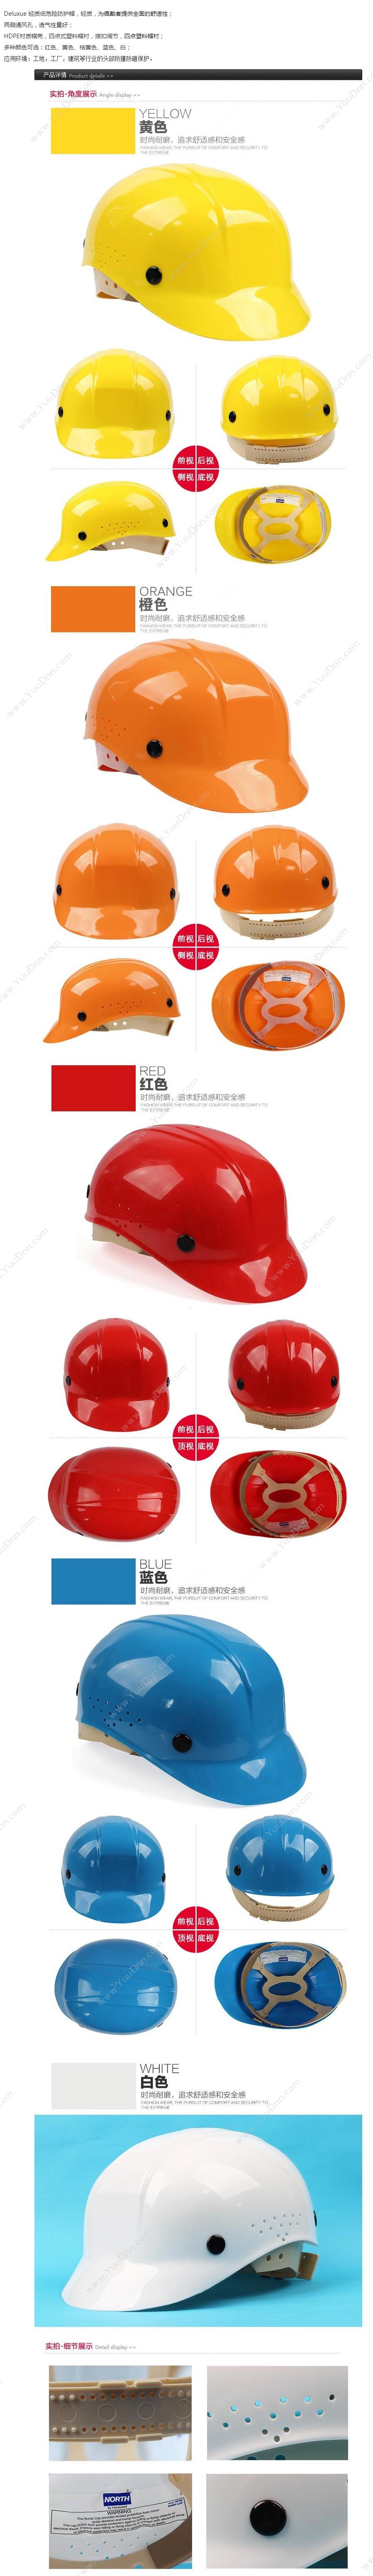 霍尼韦尔 Honeywell BC86150000  均码 红色 20顶/箱 安全帽